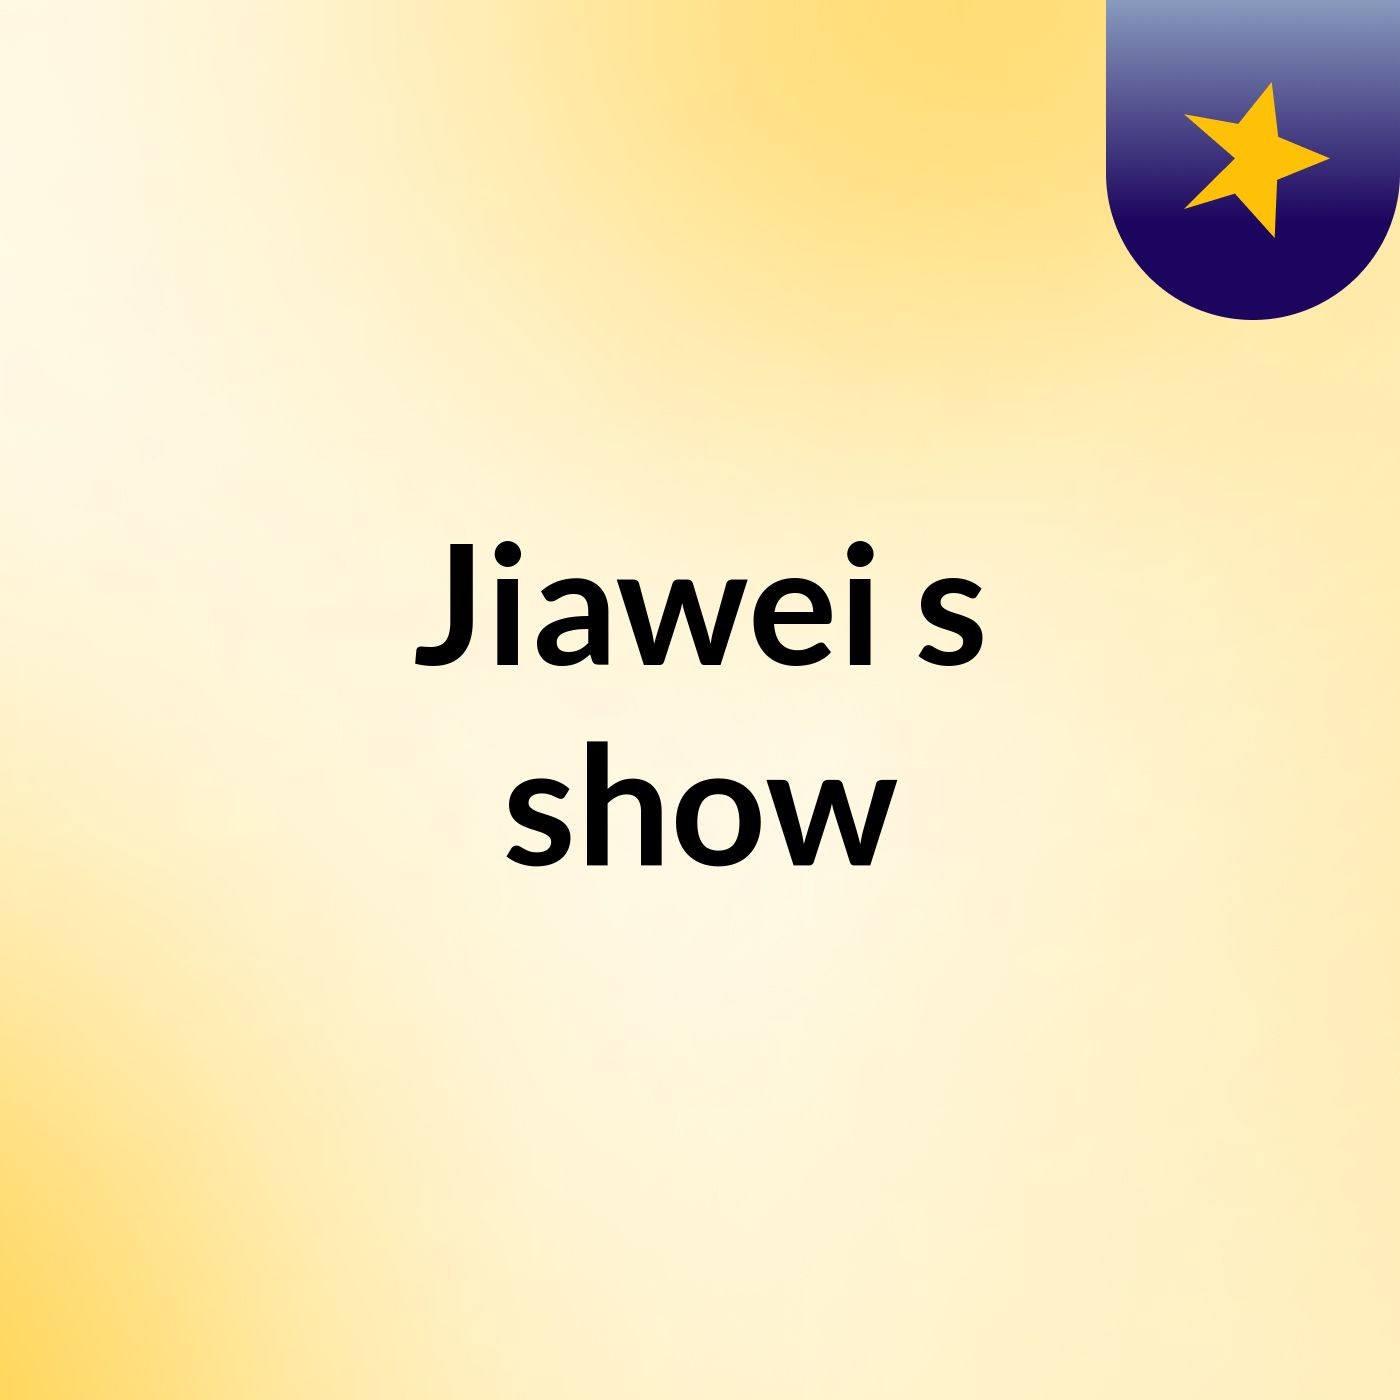 Jiawei's show